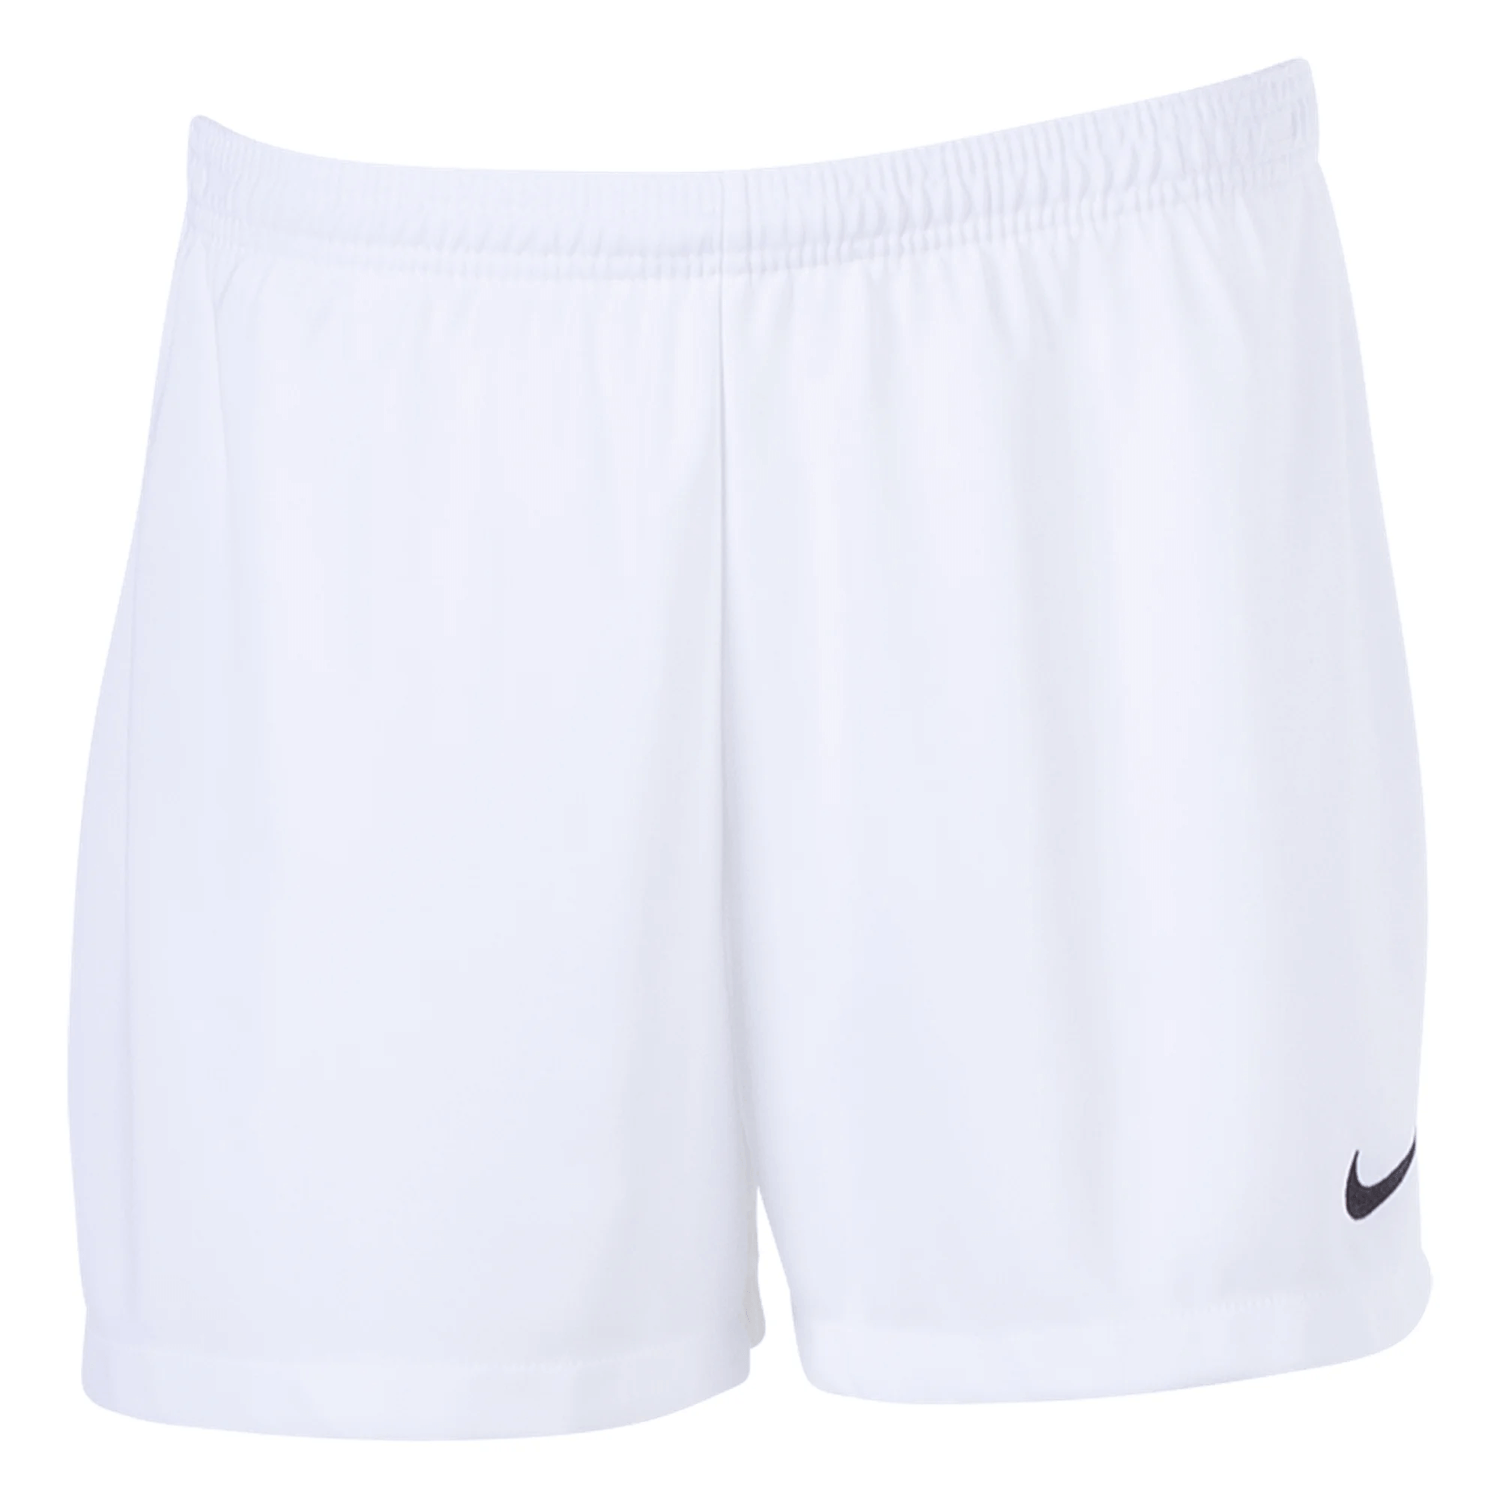 Nike Women's DF Classic II Shorts White (Front)